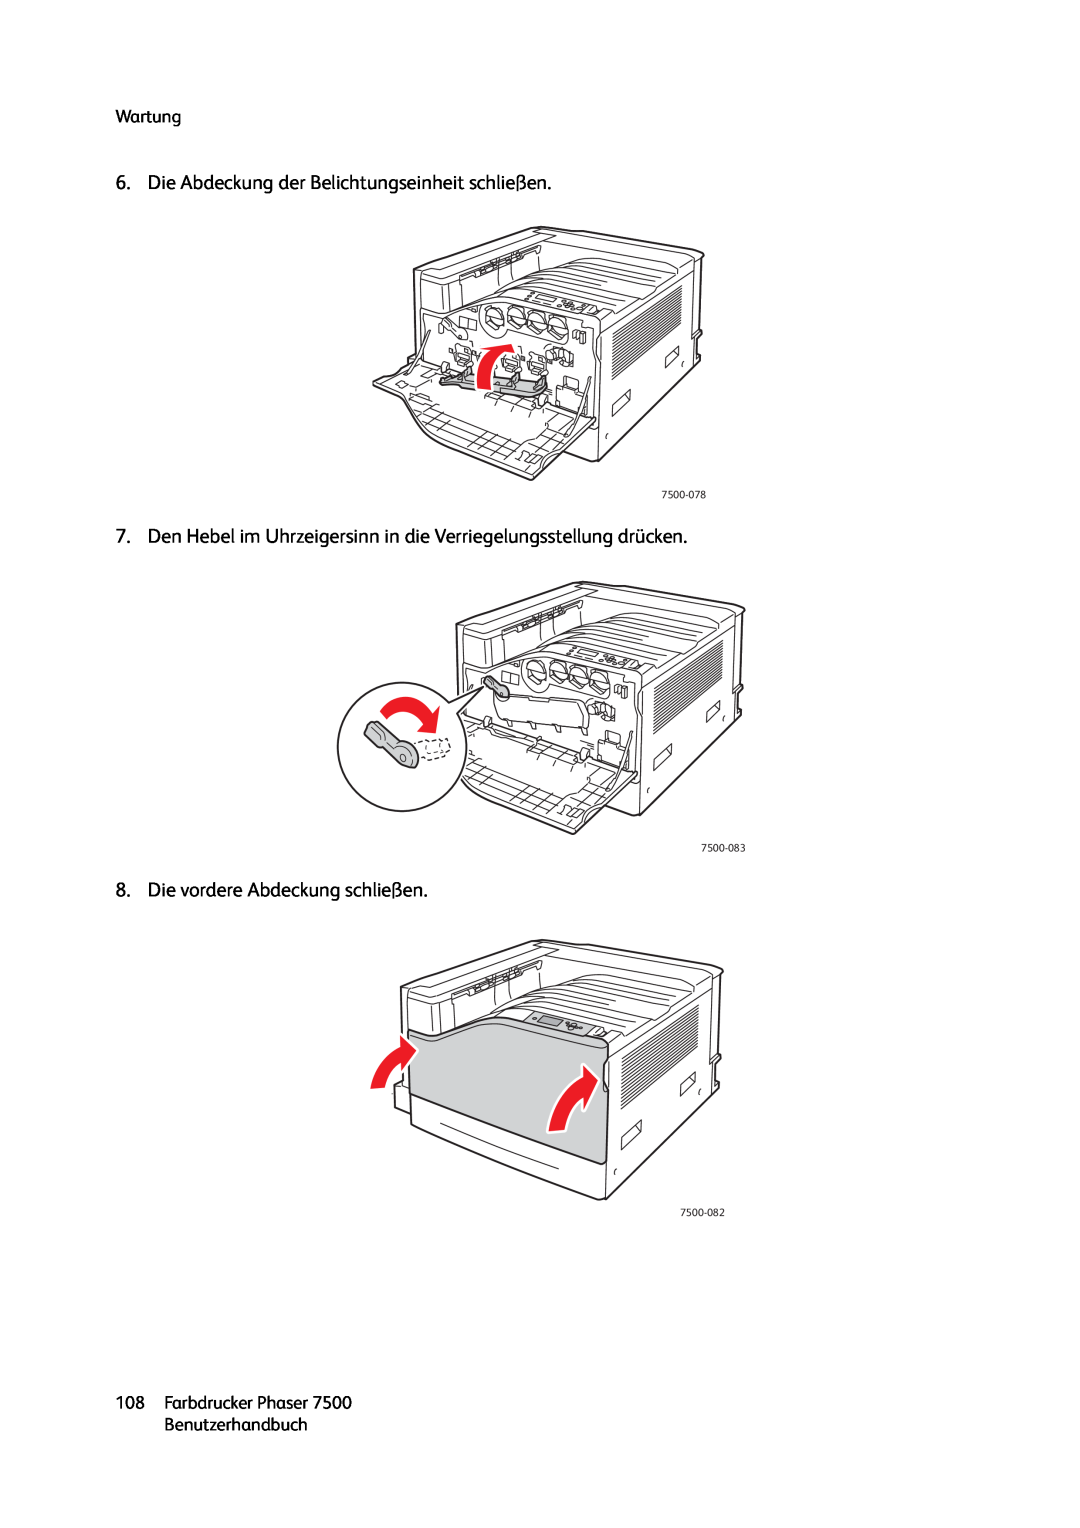 Xerox 7500 color printer manual Die Abdeckung der Belichtungseinheit schließen, Die vordere Abdeckung schließen, Wartung 